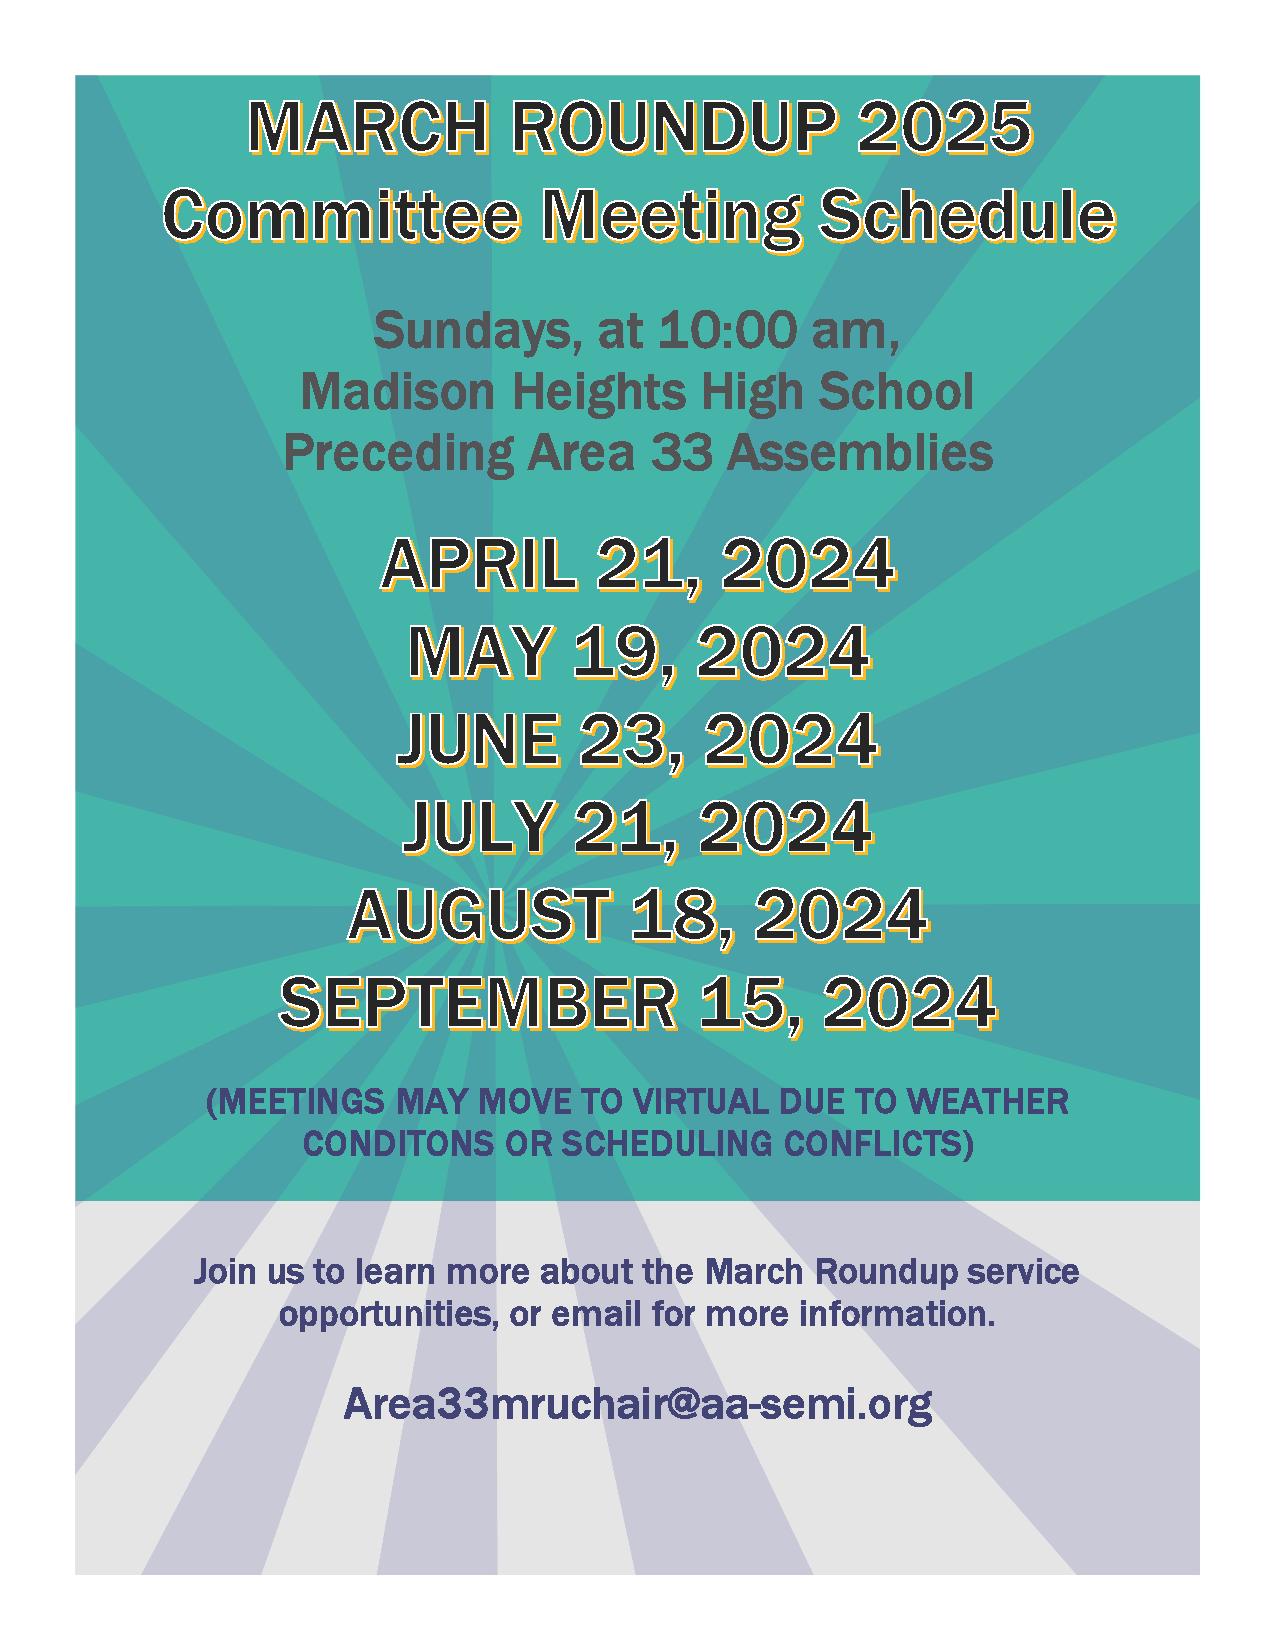 2024-09-15_MRU2025 Planning Schedule